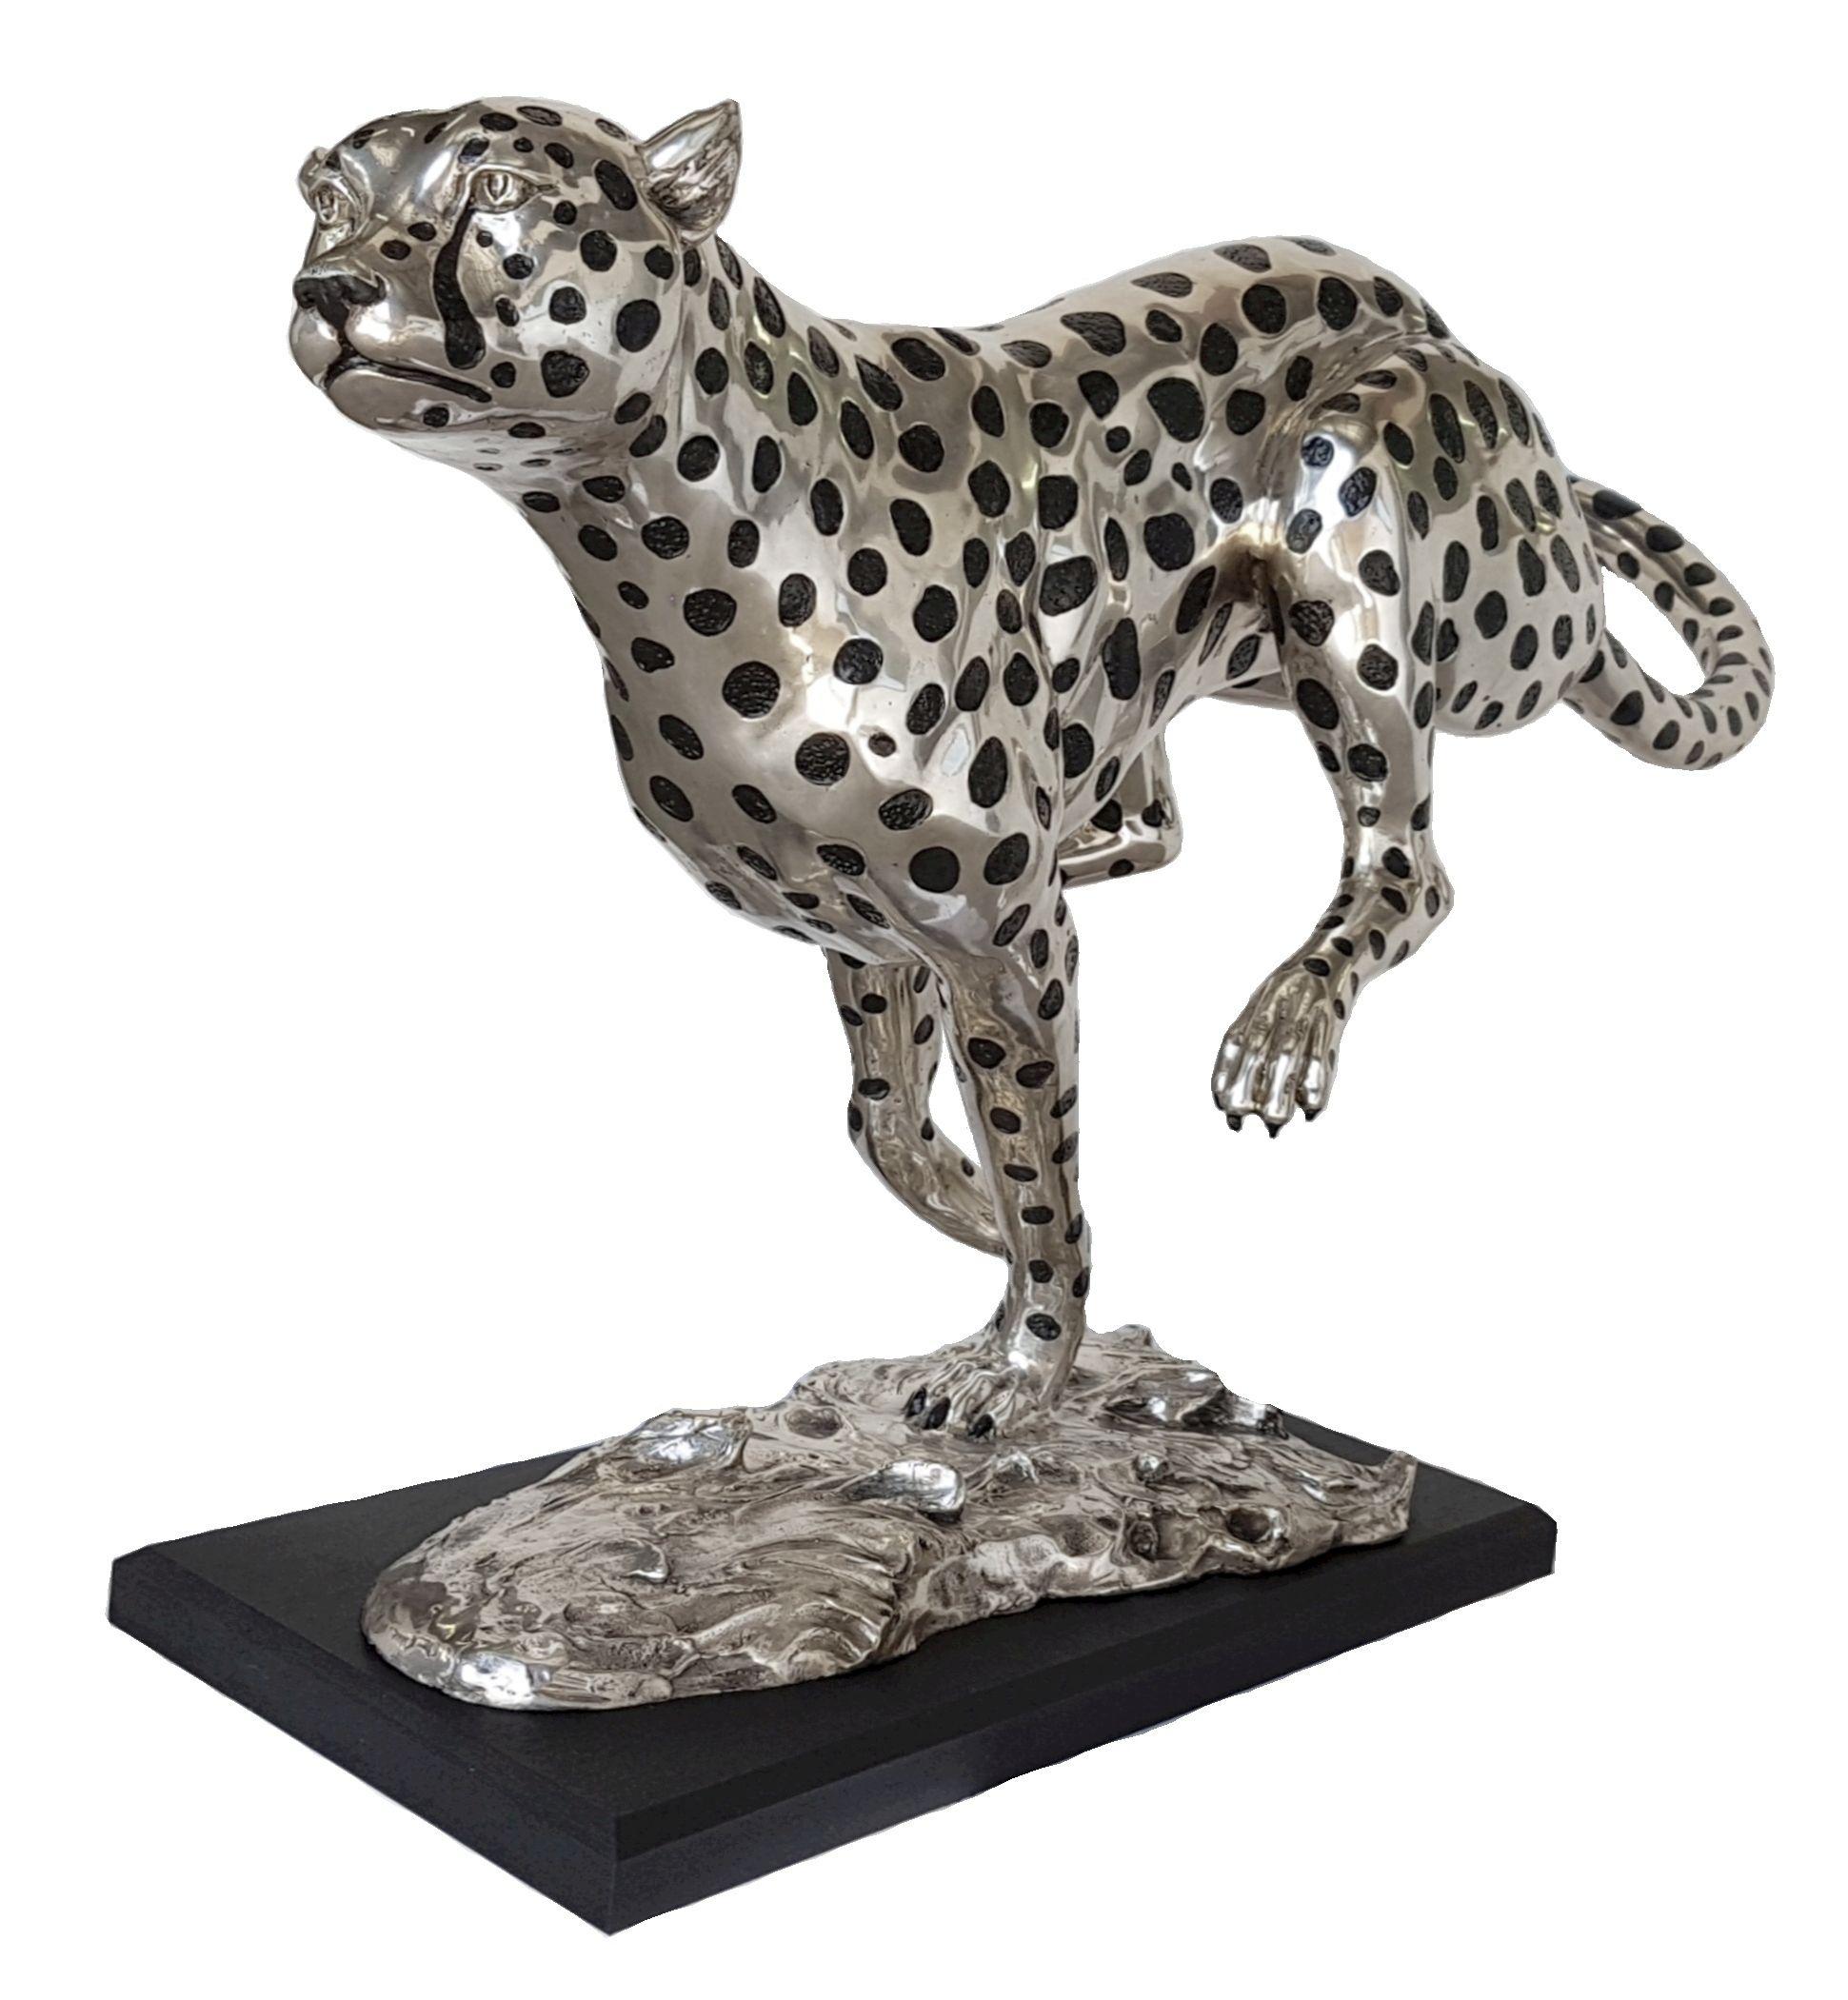 Silver-plated bronze cheetah running sculpture - Contemporary Sculpture by Zawadi